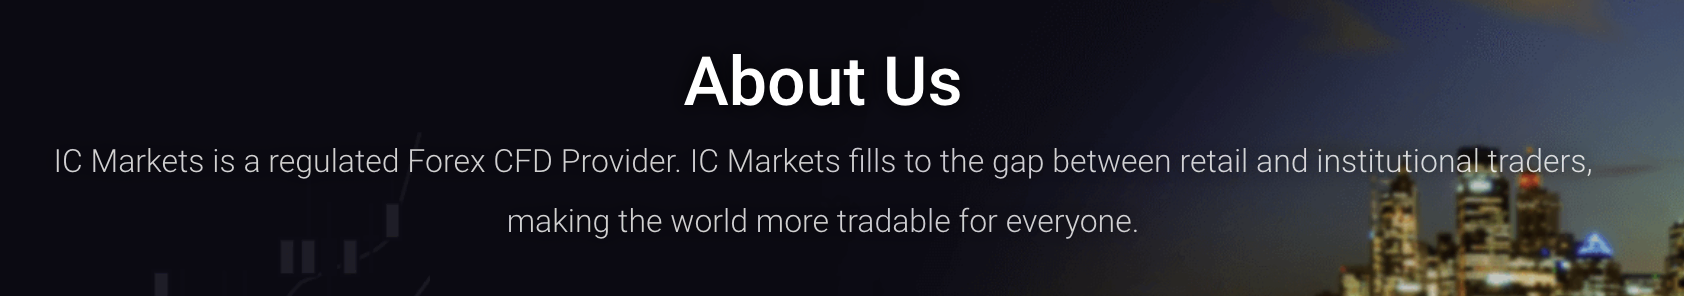 Acerca de IC Markets